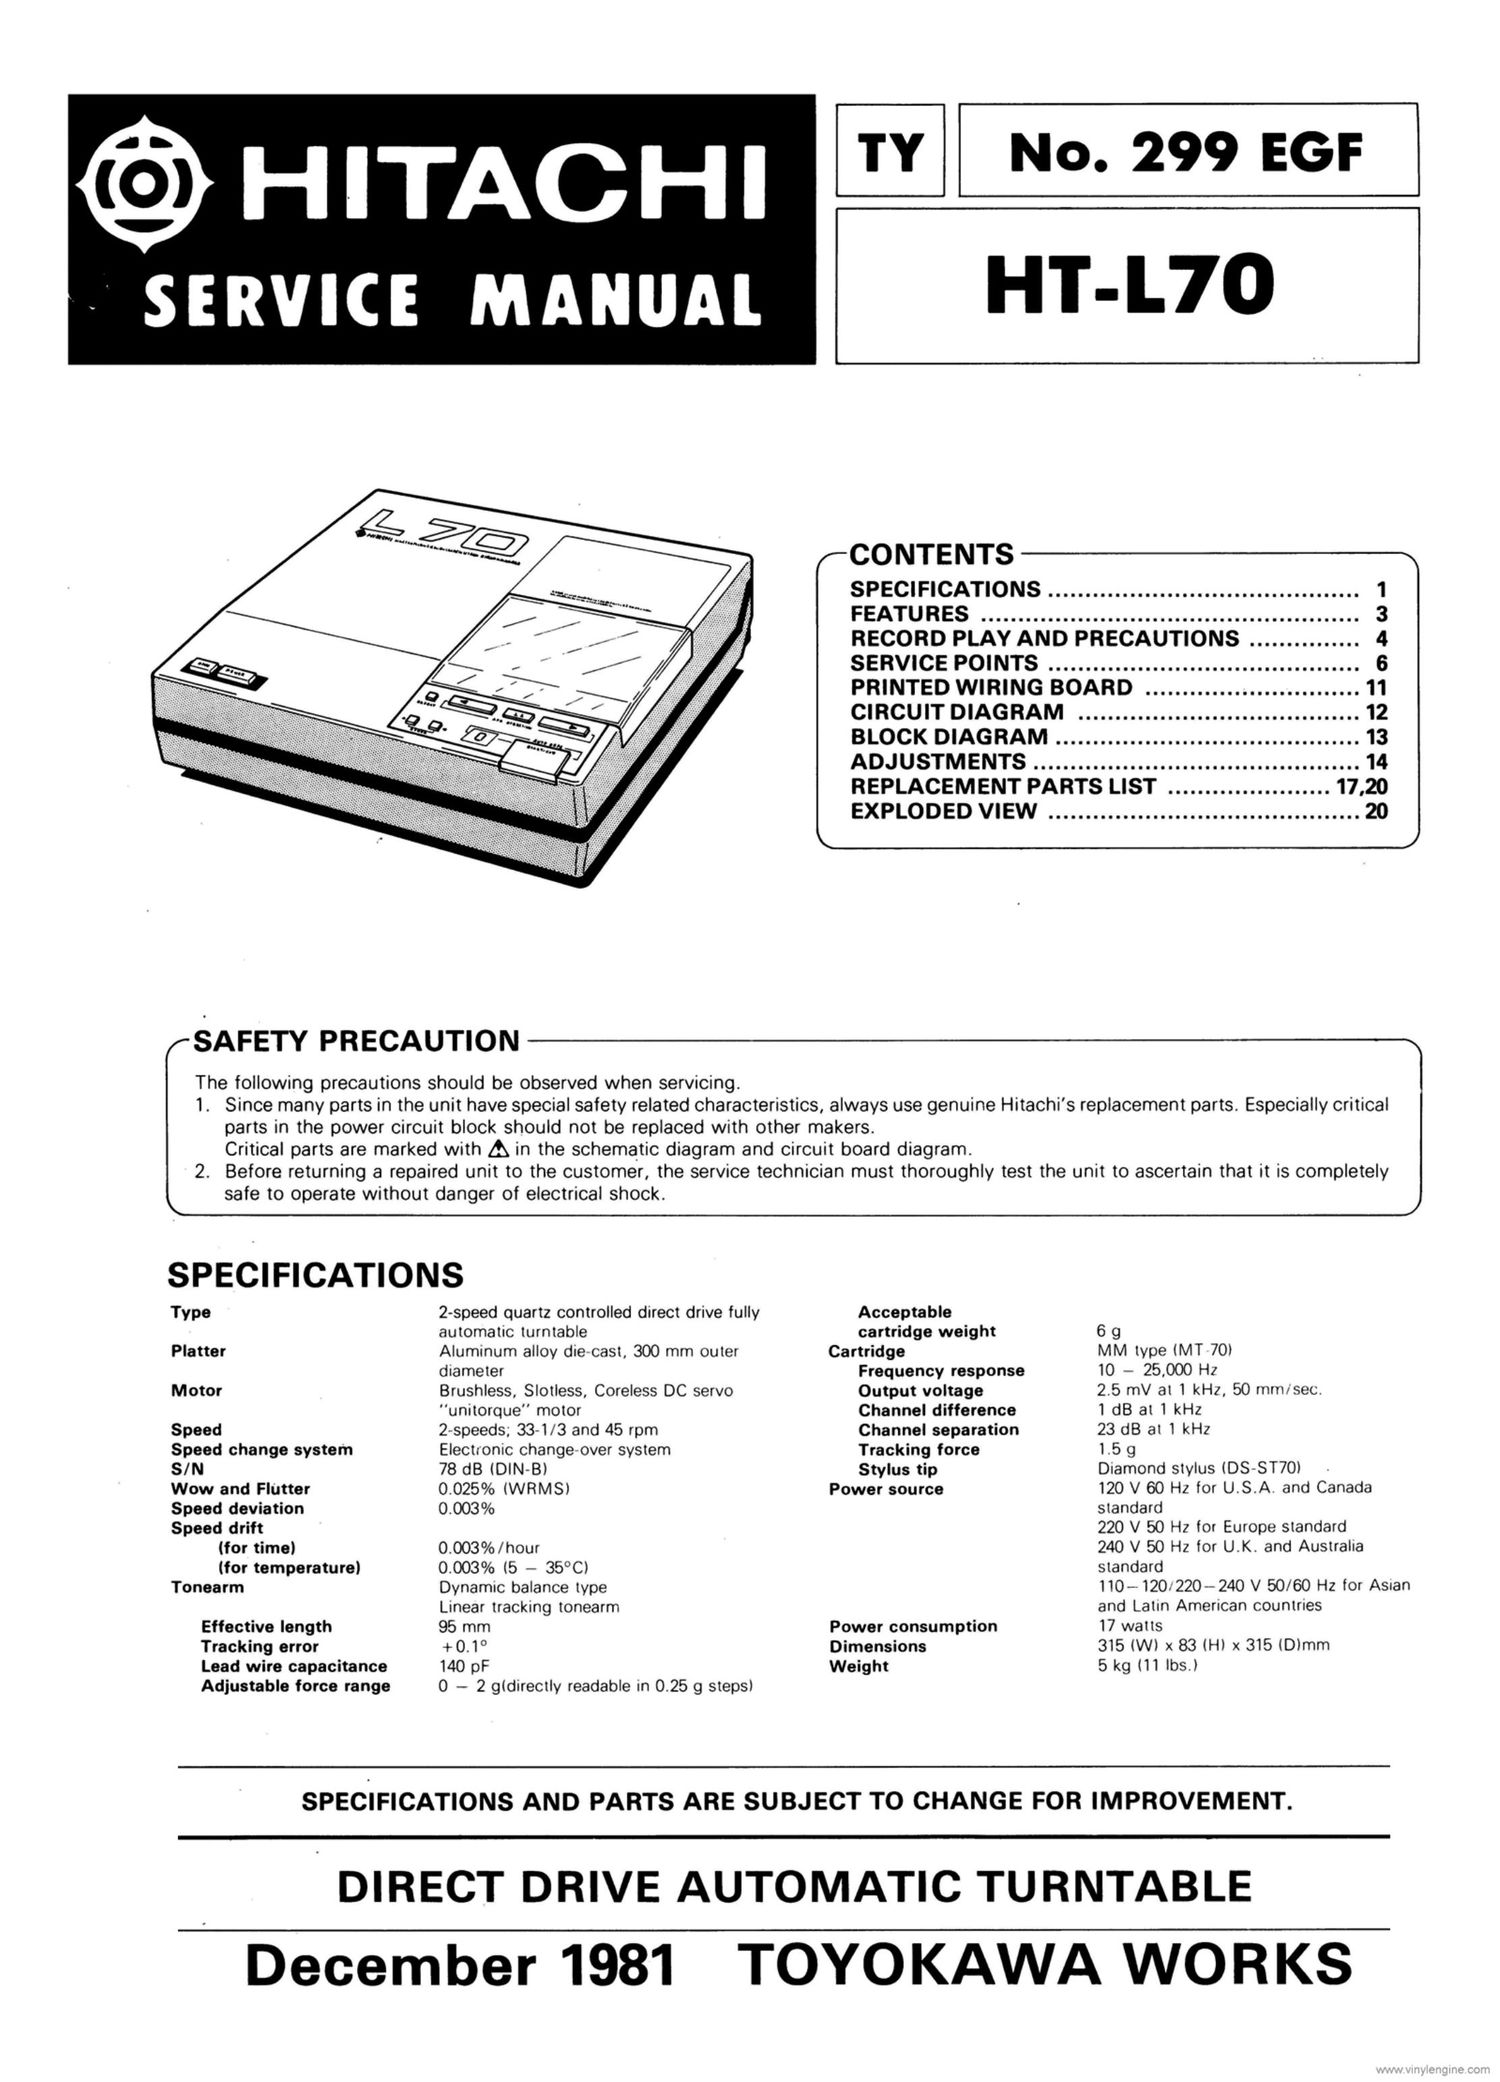 Hitachi HTL 70 Service Manual